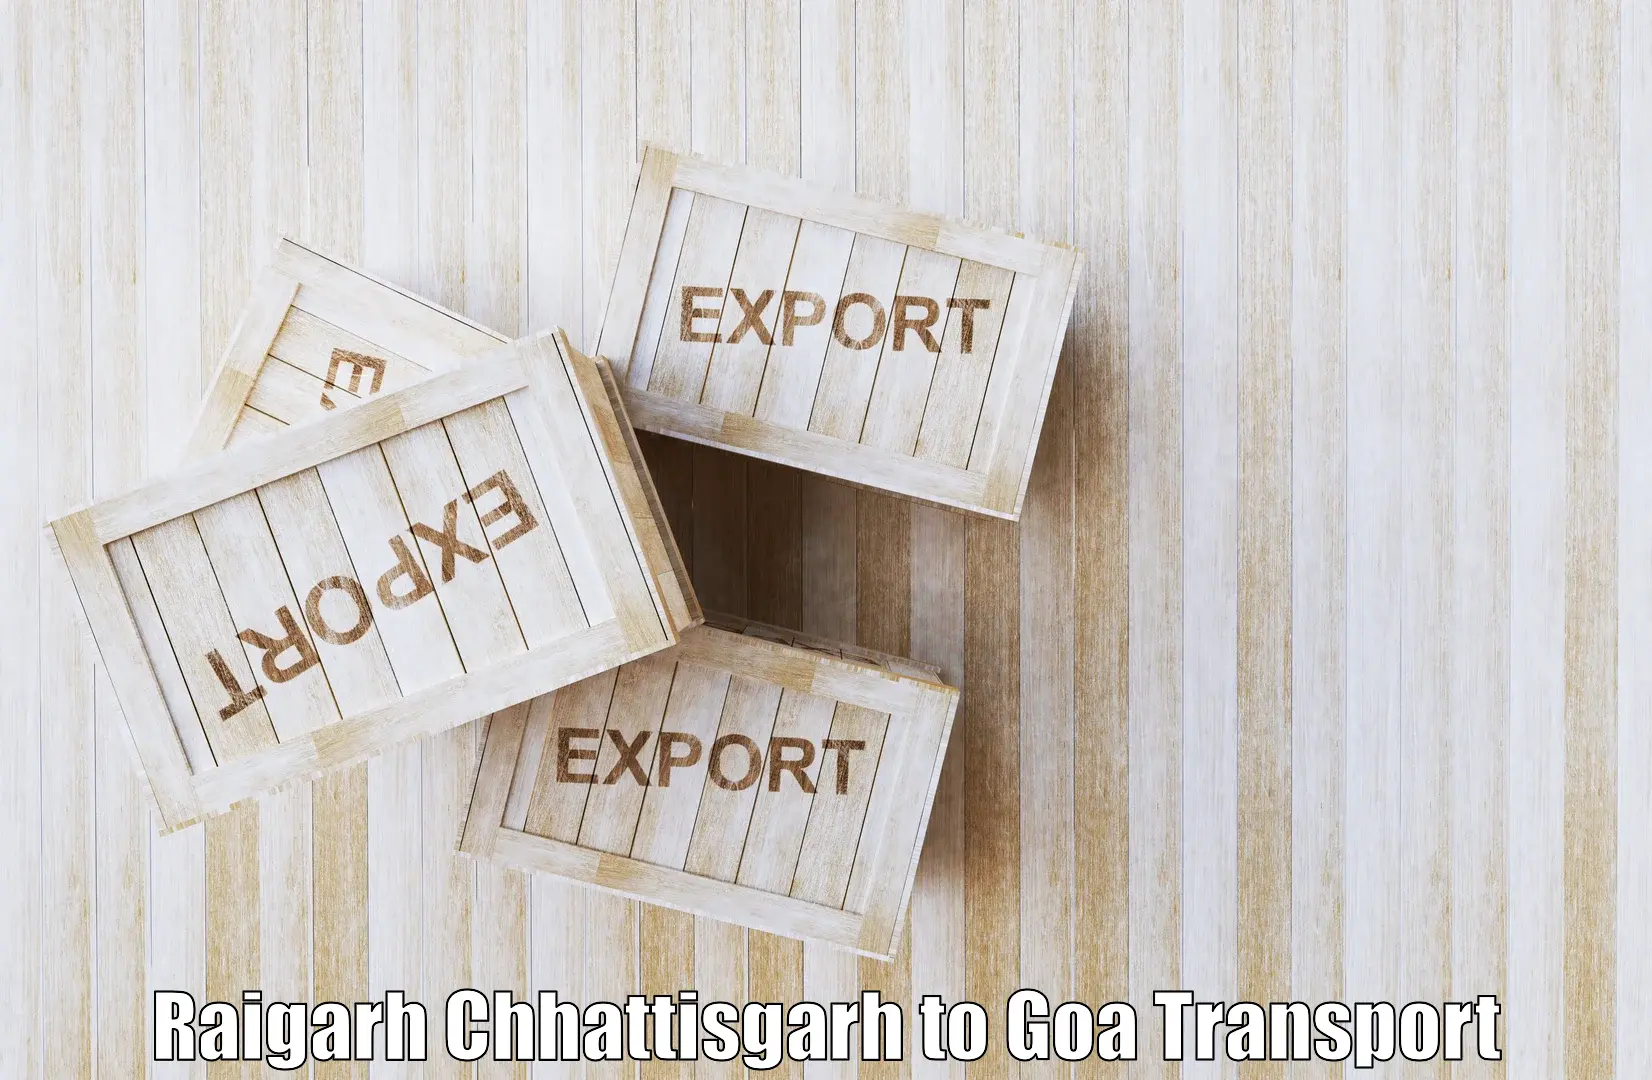 Domestic transport services Raigarh Chhattisgarh to South Goa